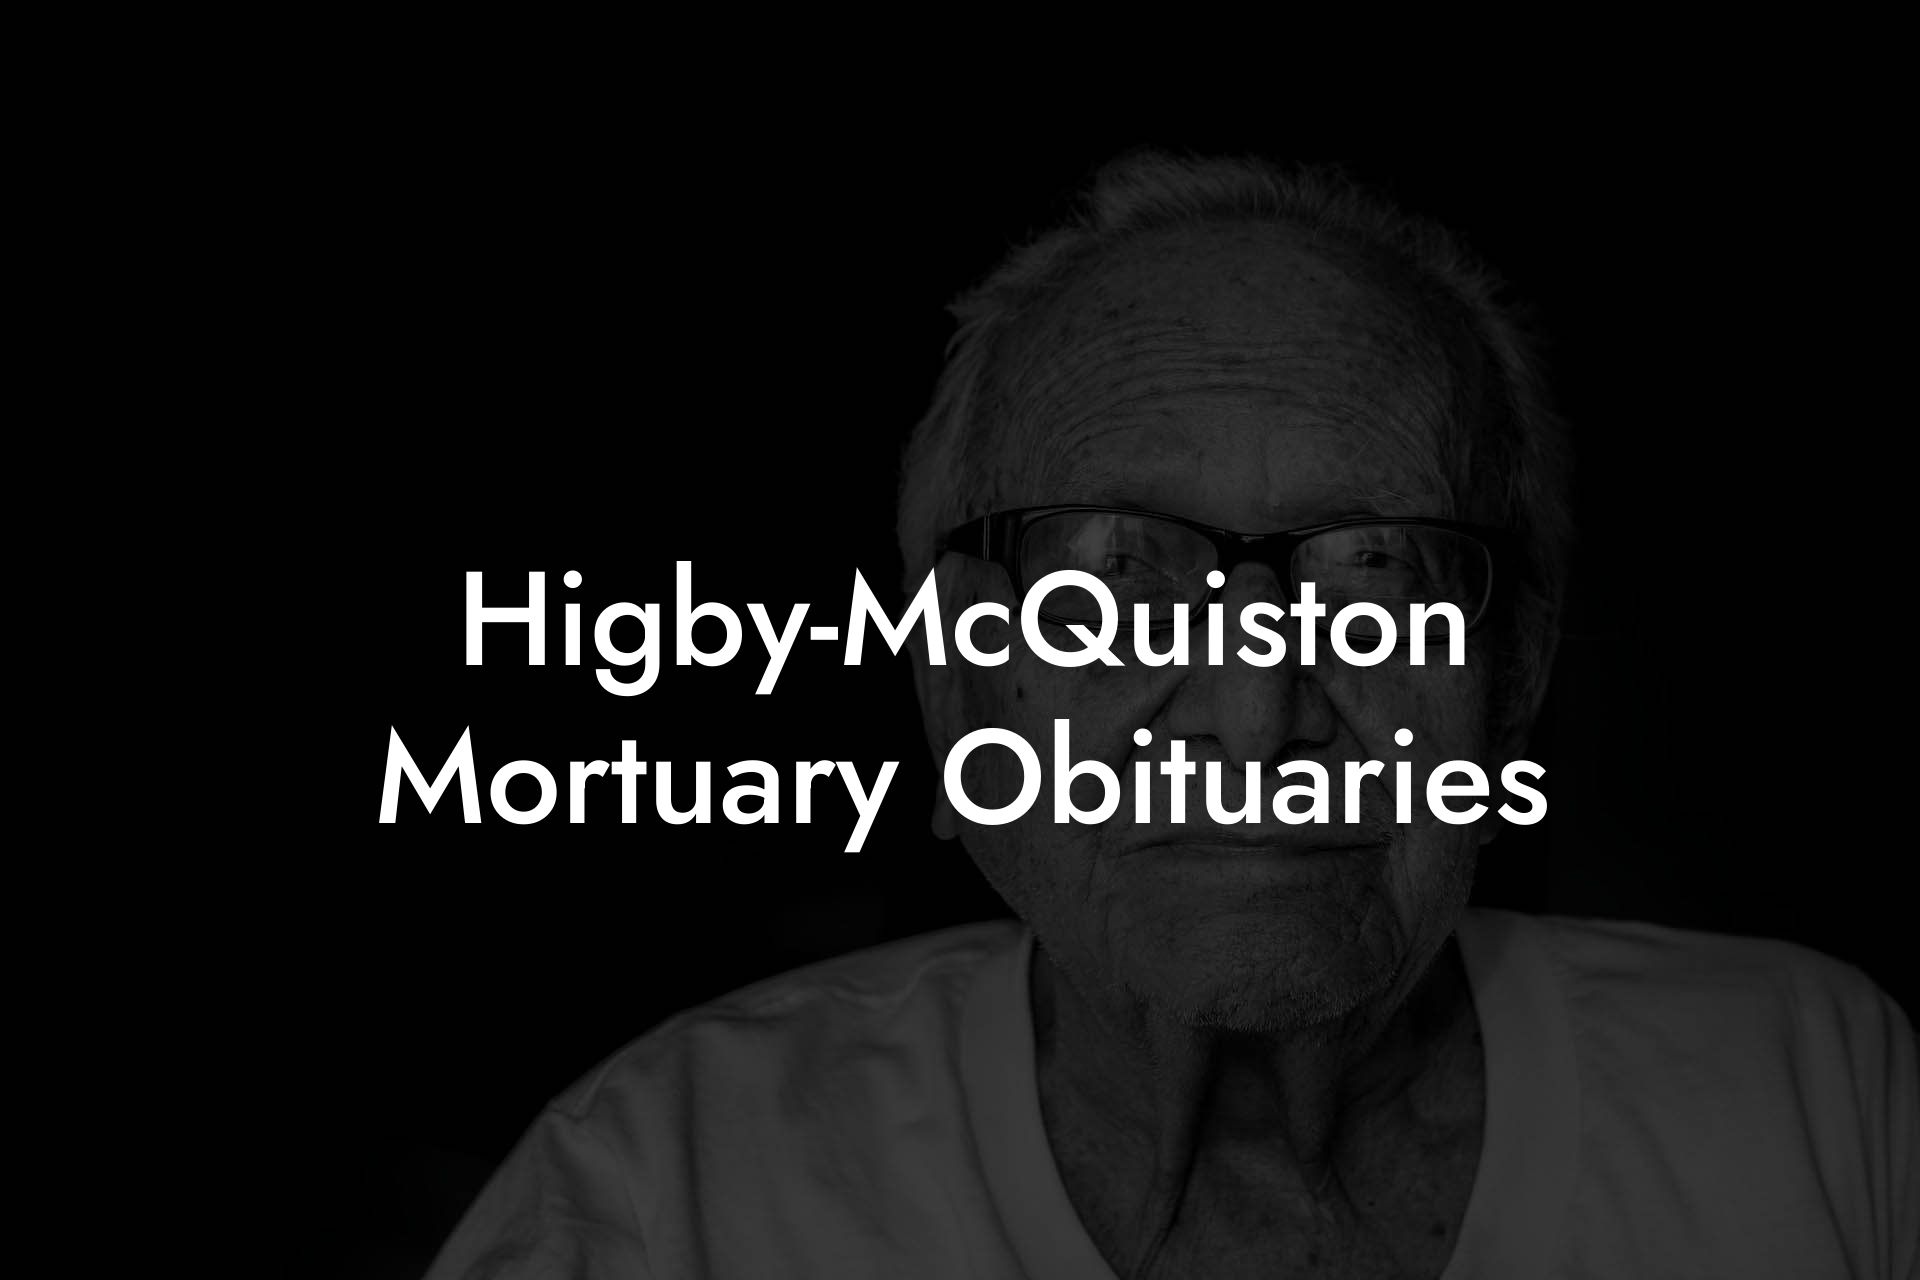 Higby-McQuiston Mortuary Obituaries